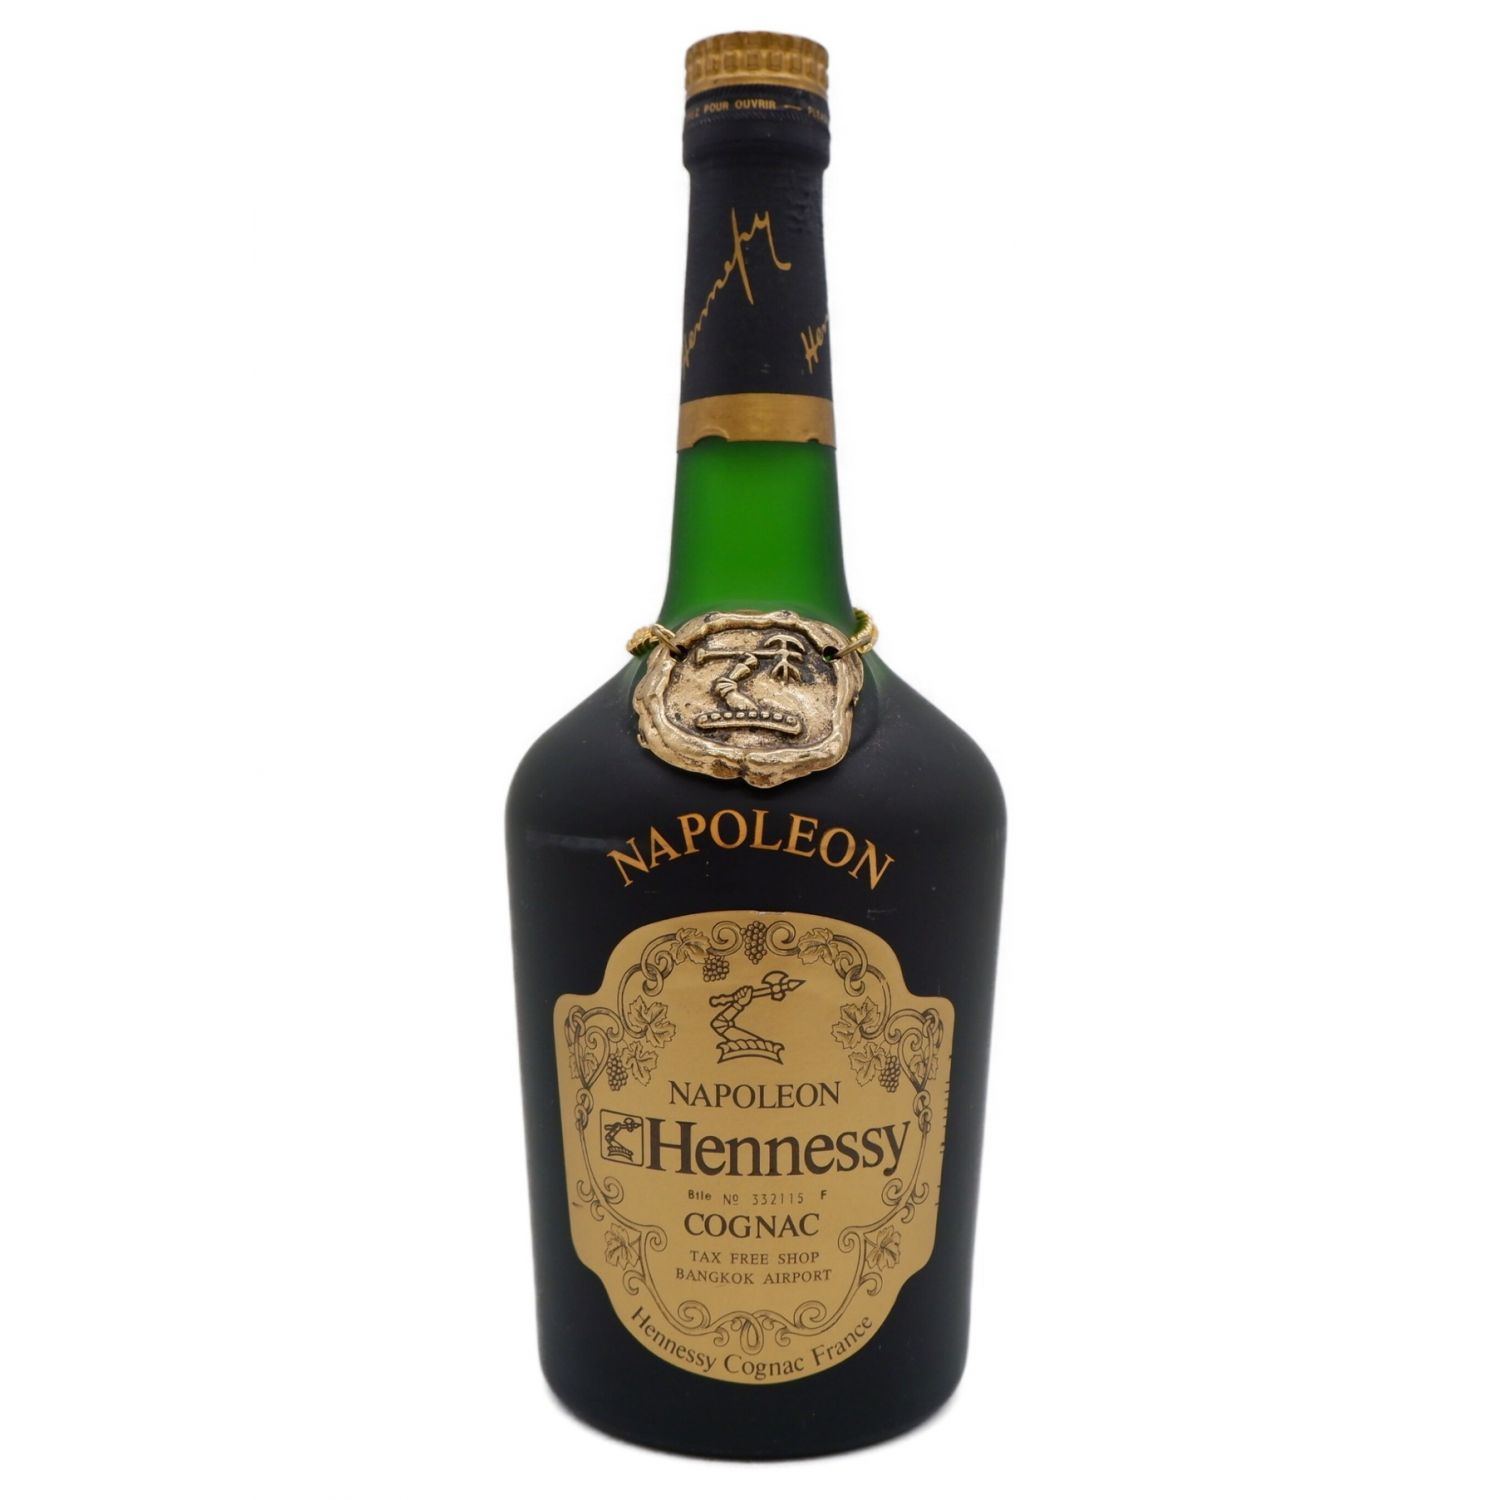 ヘネシー (Hennessy) コニャックヘネシー 700ml ナポレオン 700ml ...